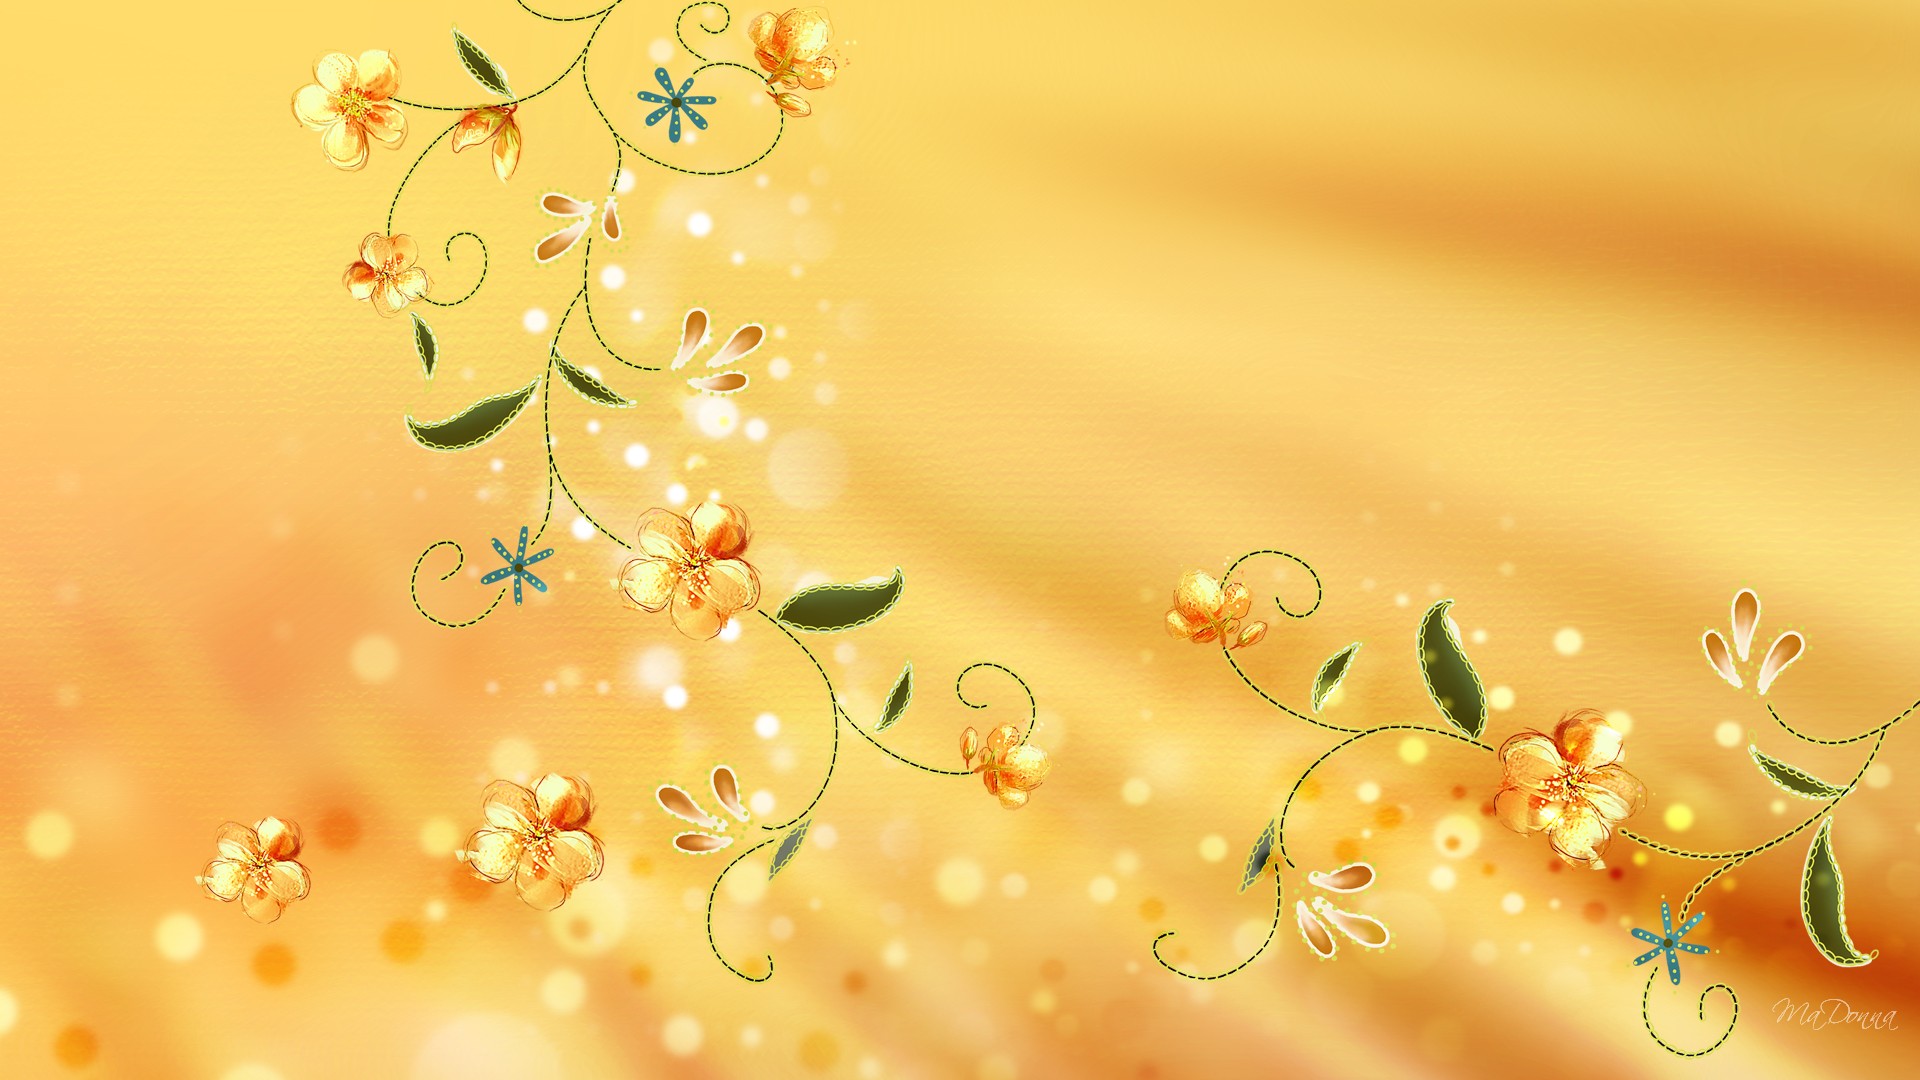 golden colour wallpaper,yellow,orange,floral design,branch,plant